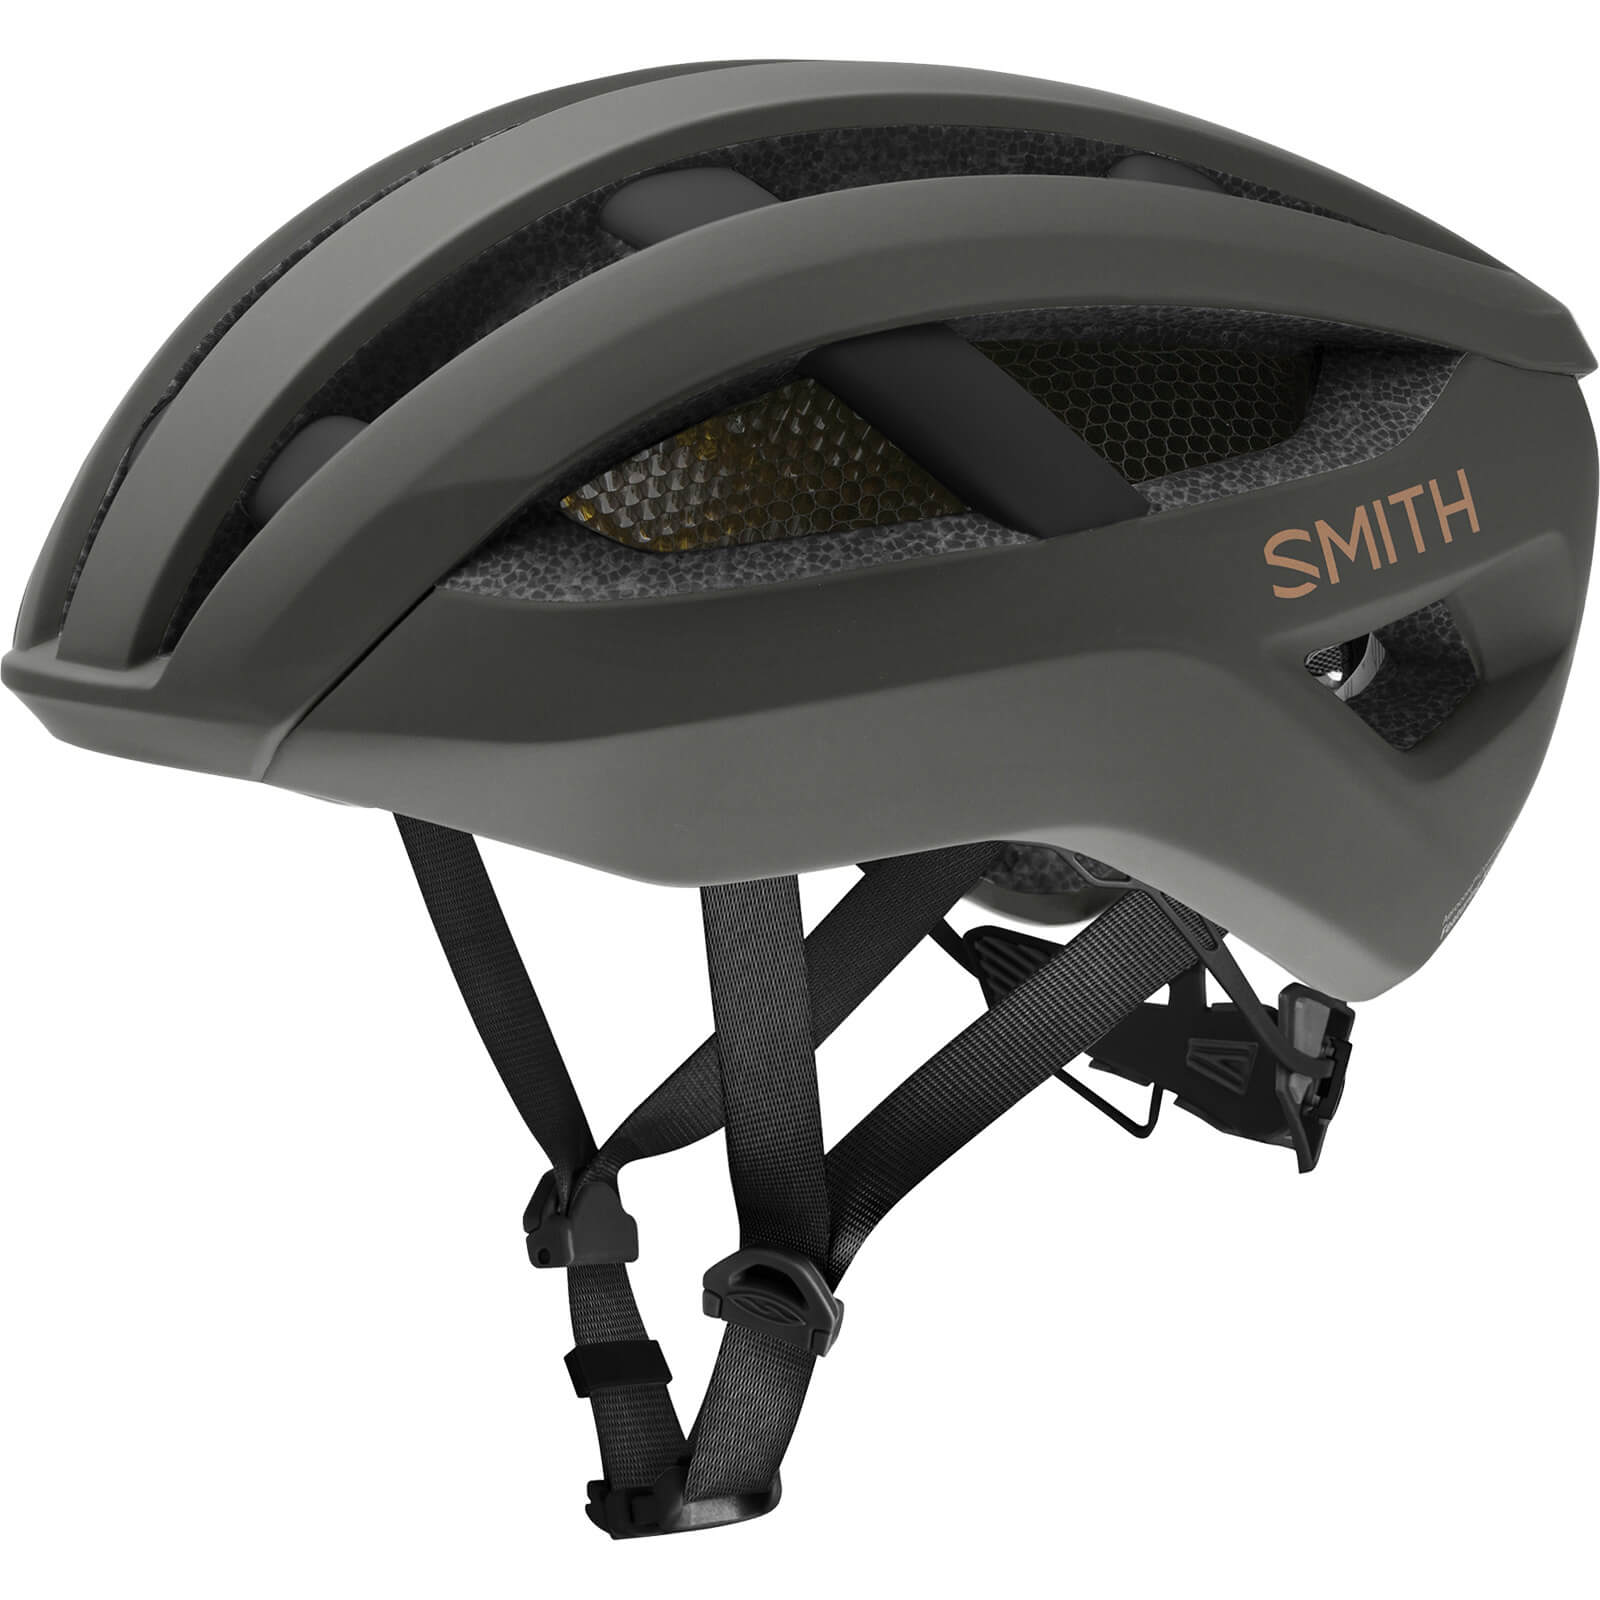 Smith Network MIPS Road Helmet - Medium - Brown